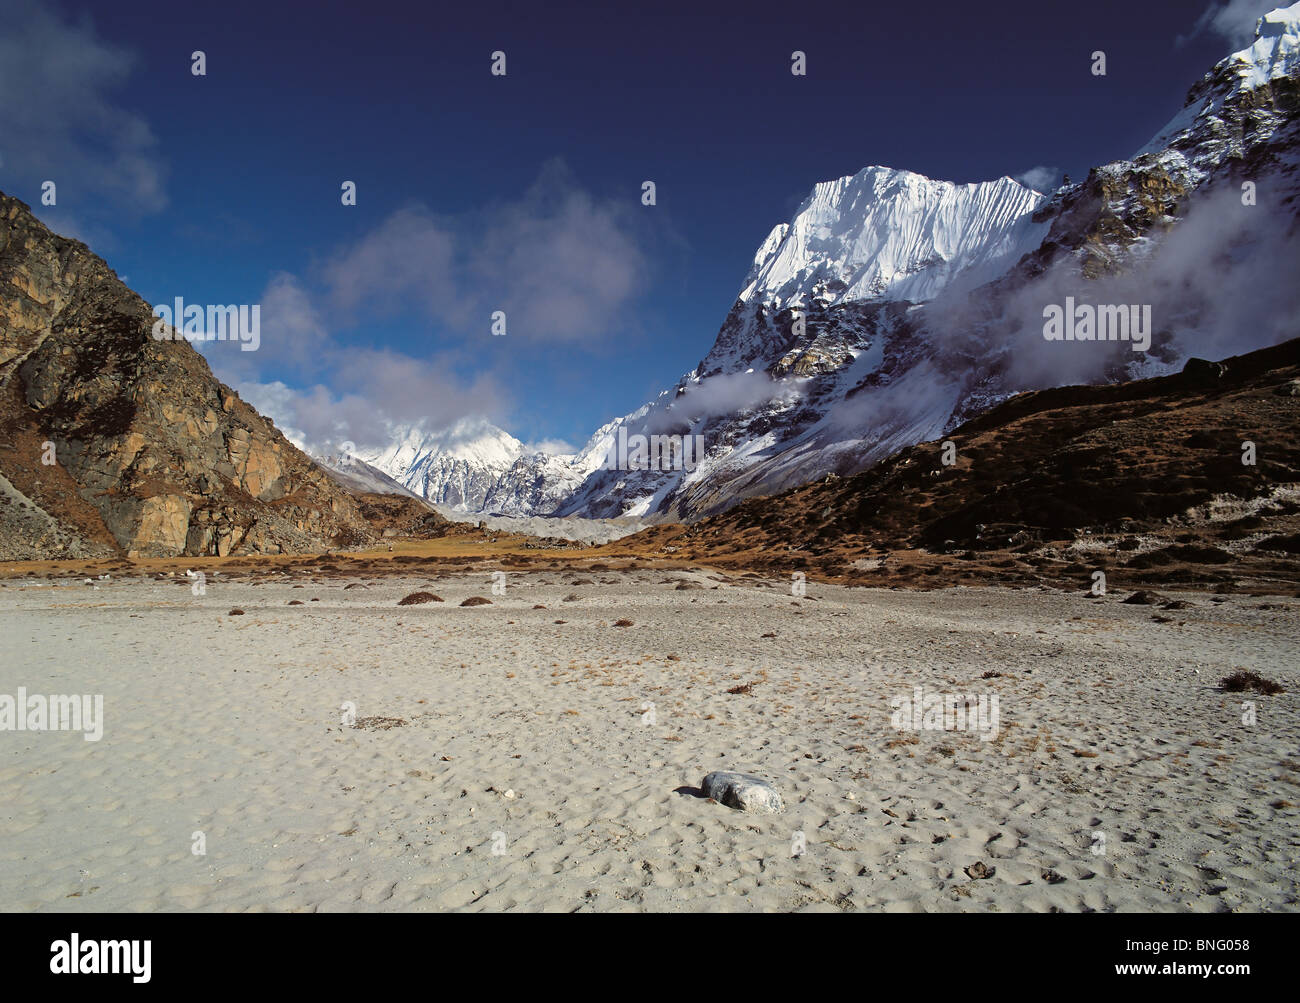 Keil-Peak von der sandigen Ebene von Lhonak in der Kangchenjunga Region Osten Nepals gesehen Stockfoto